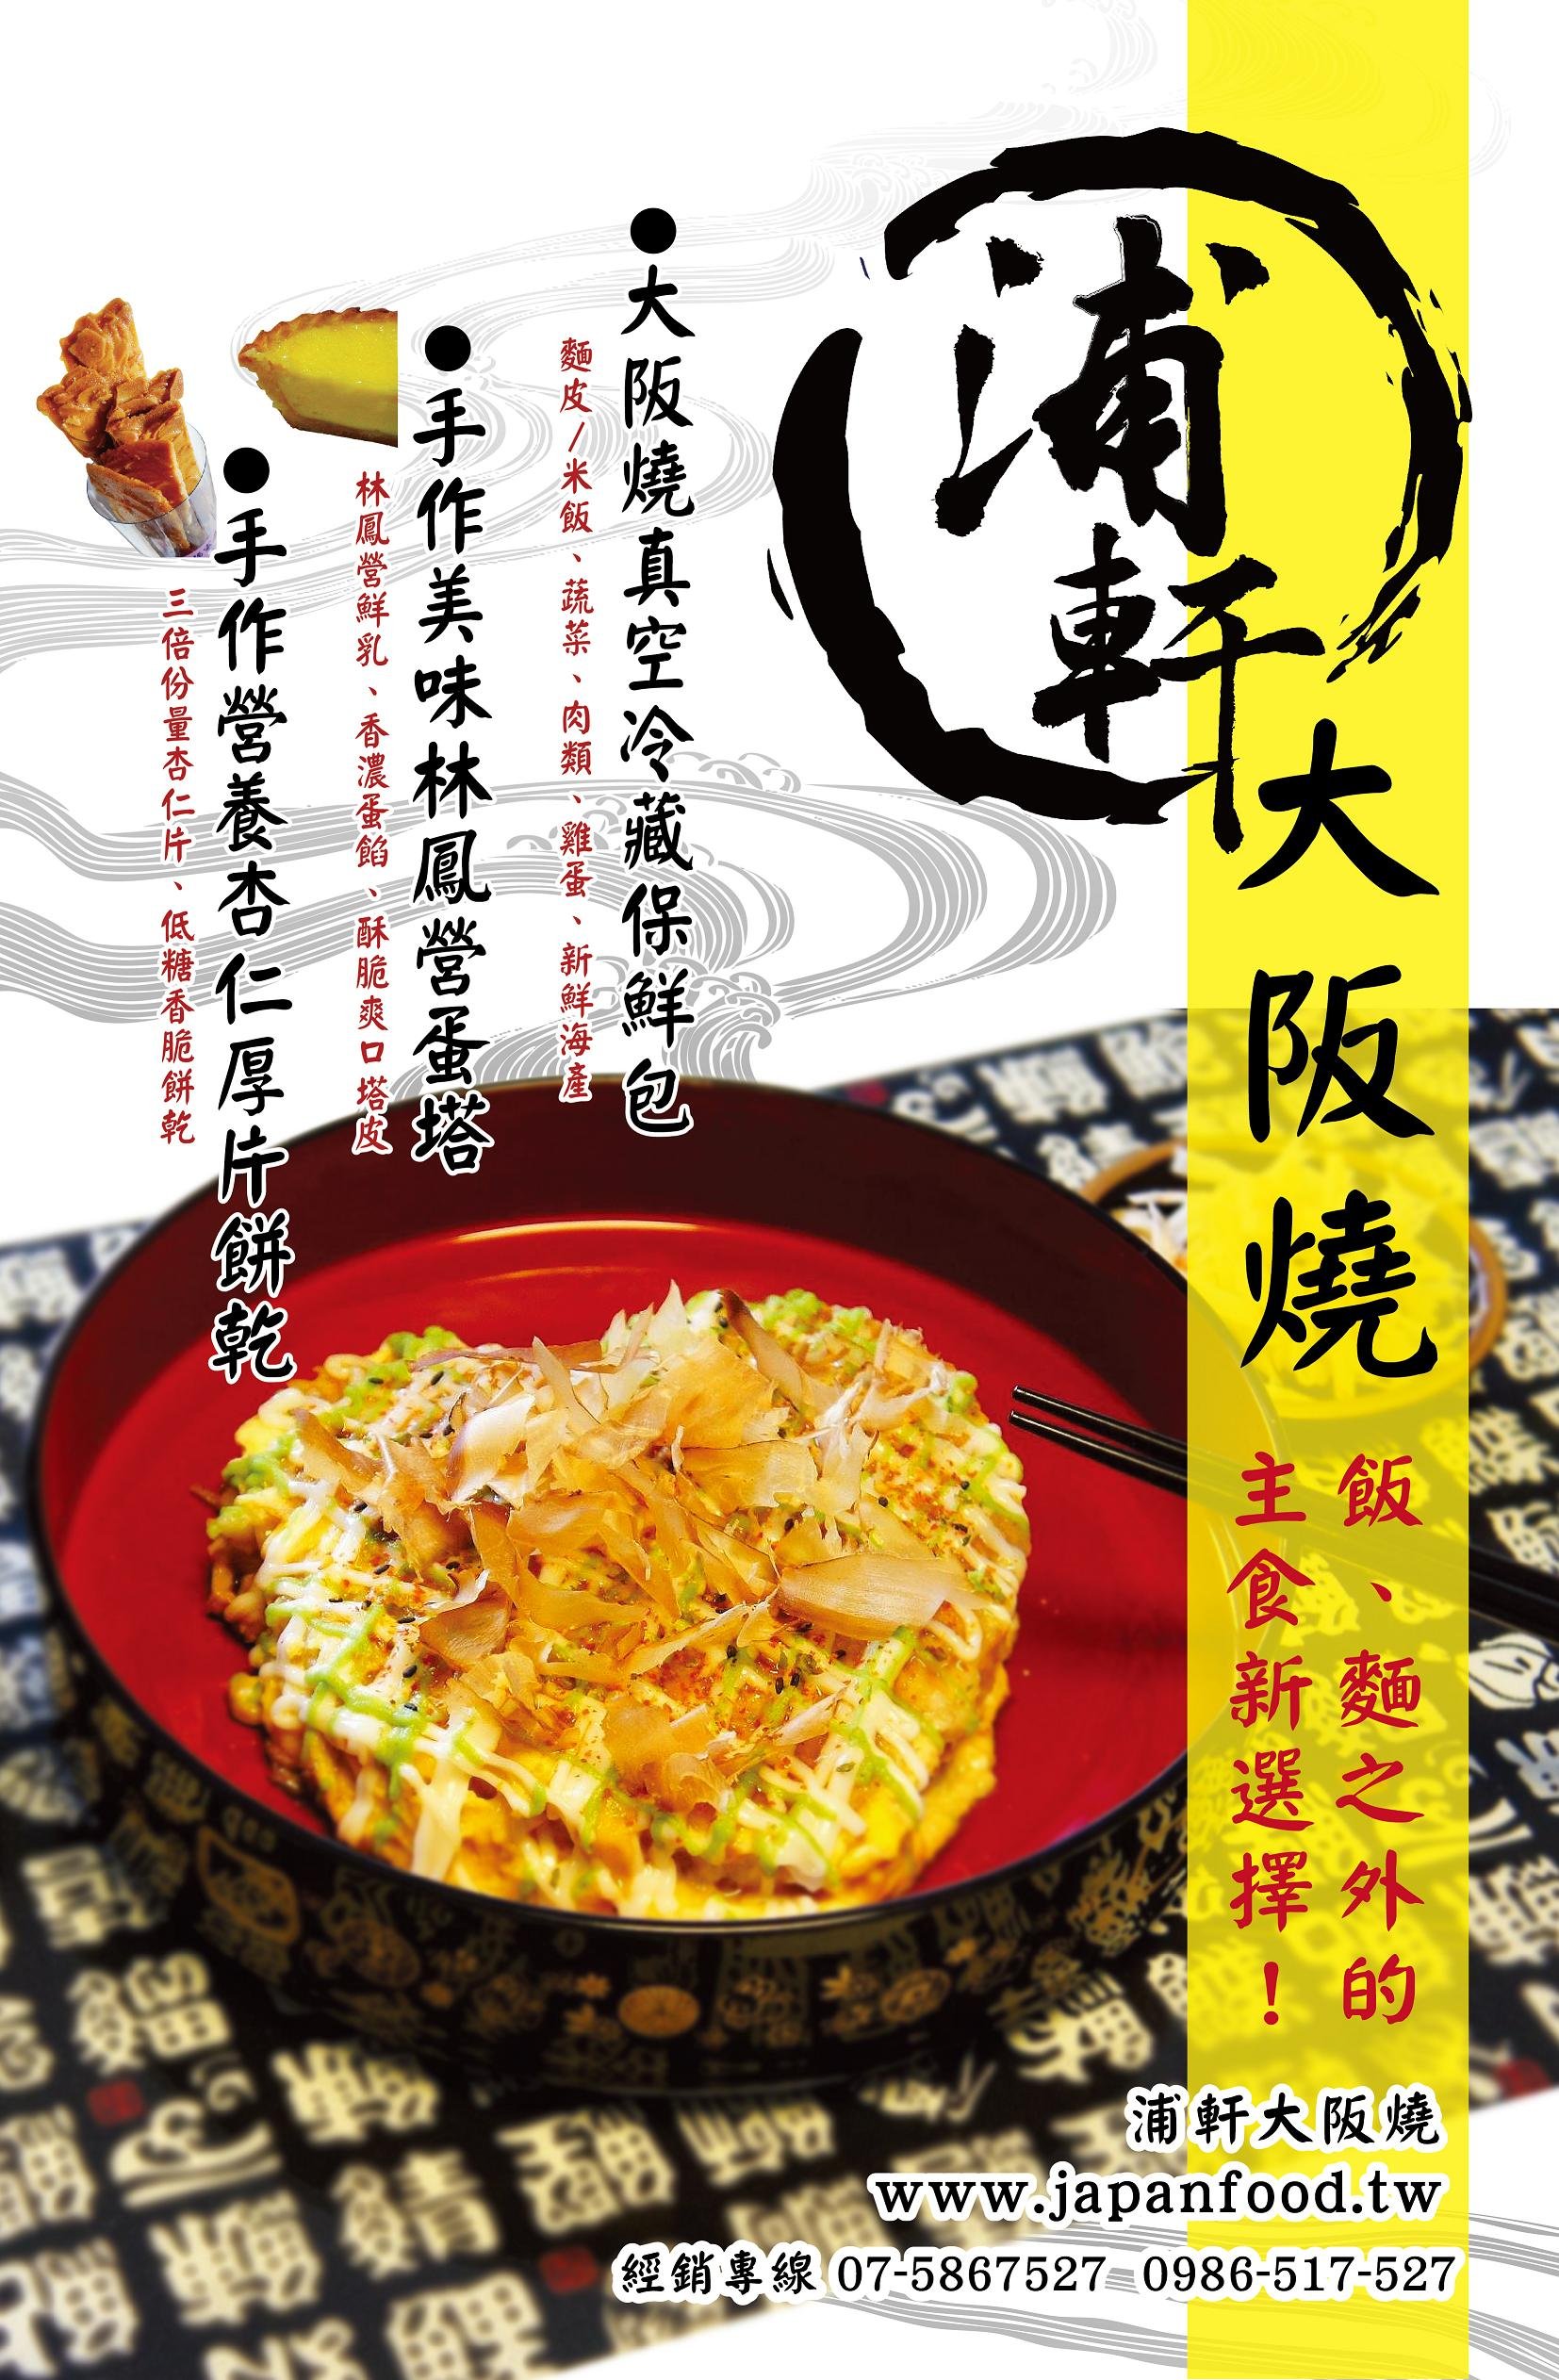 浦軒大阪燒 : 餐廳美食‧平價消費 